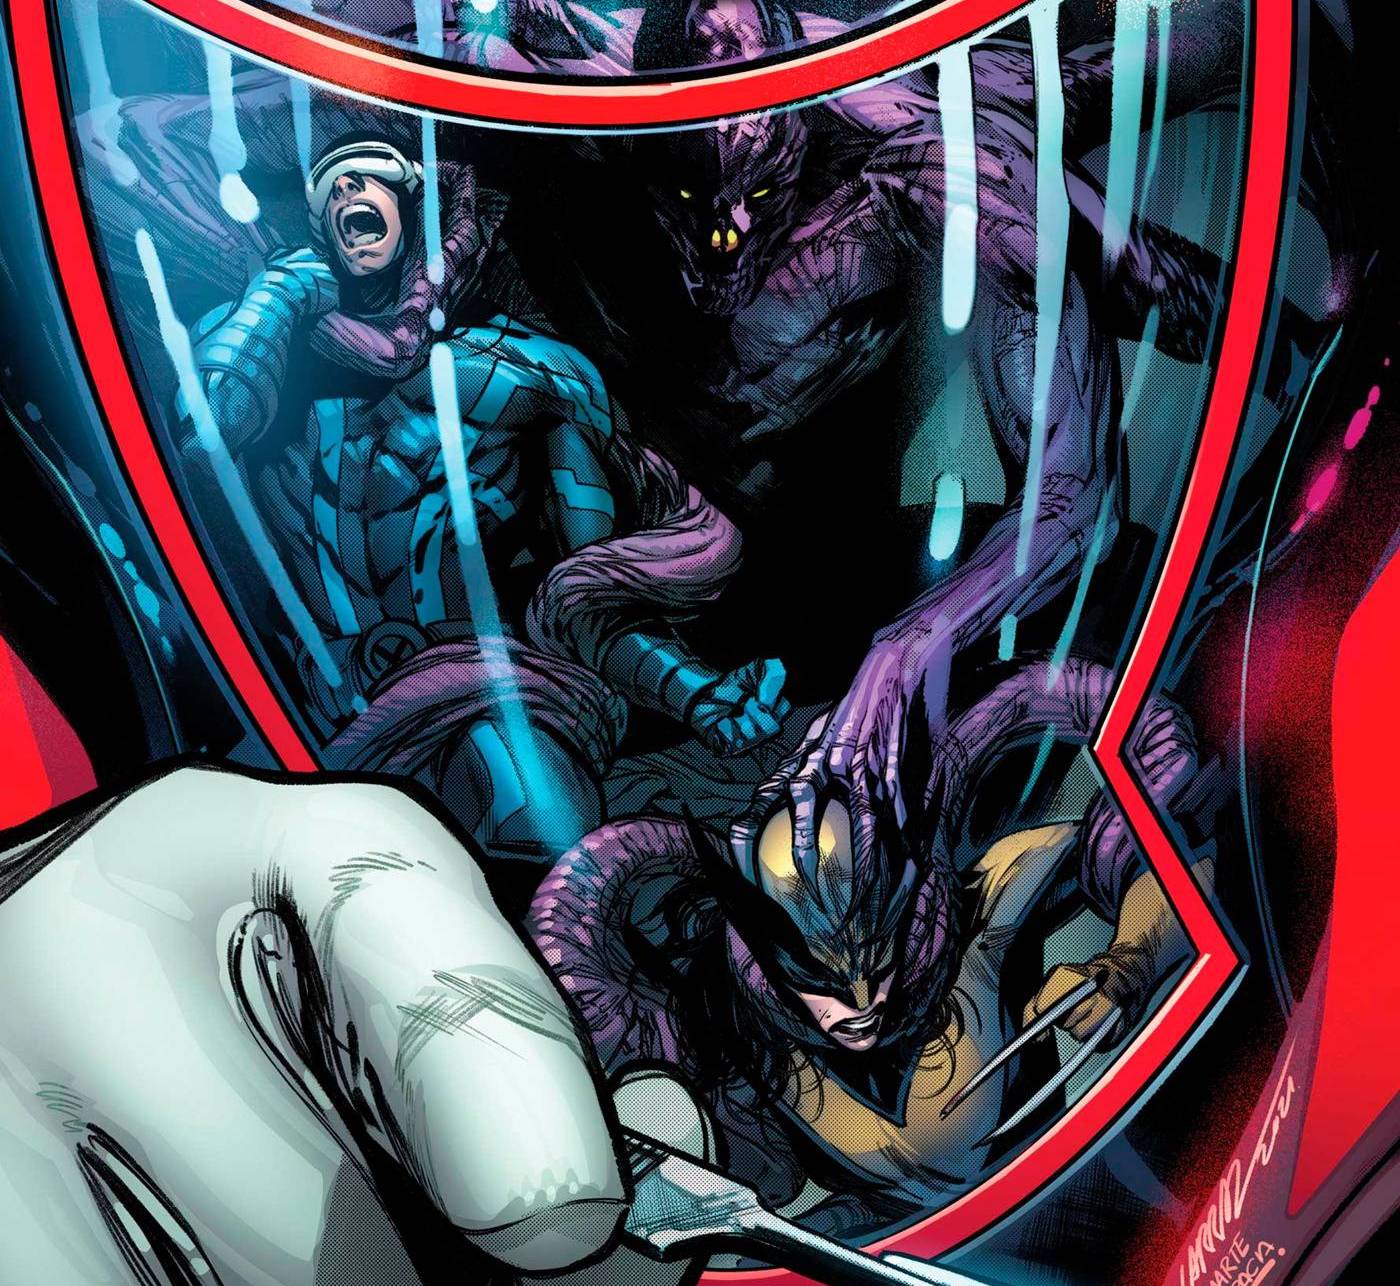 'X-Men' #5 will make you adore Polaris